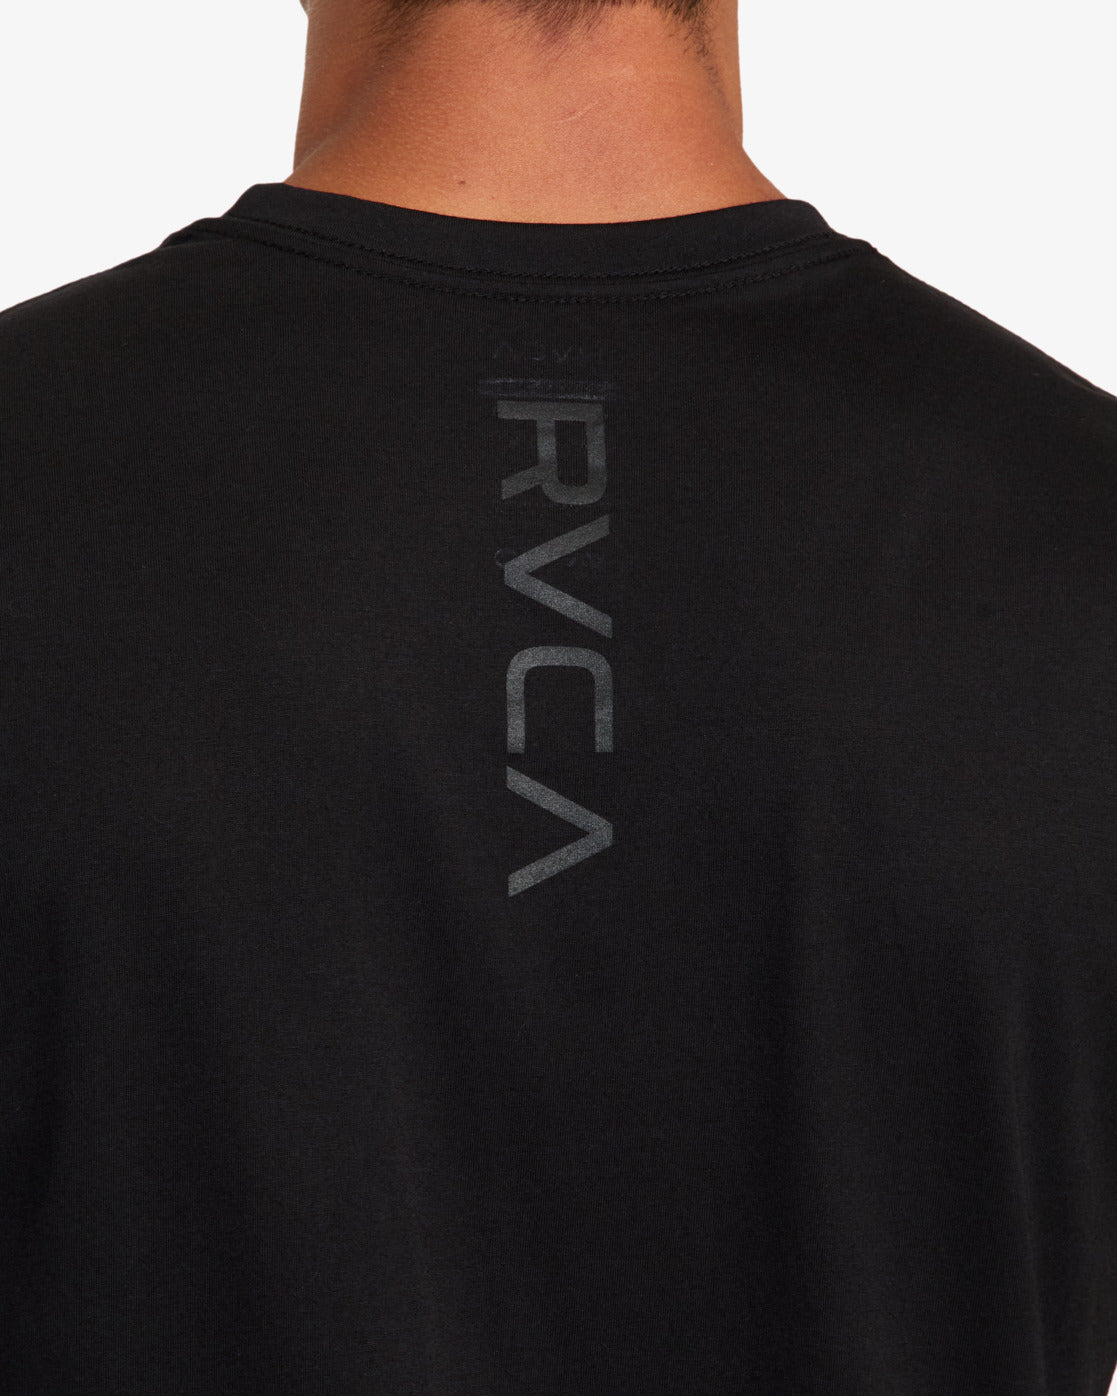 T-shirt Technique RVCA VA Sport Mark - Noir | Collection_Zalando | Nouveaux produits | Produits les plus récents | Produits les plus vendus | t-shirts pour hommes | T-shirts à manches courtes pour hommes | surfdevils.com